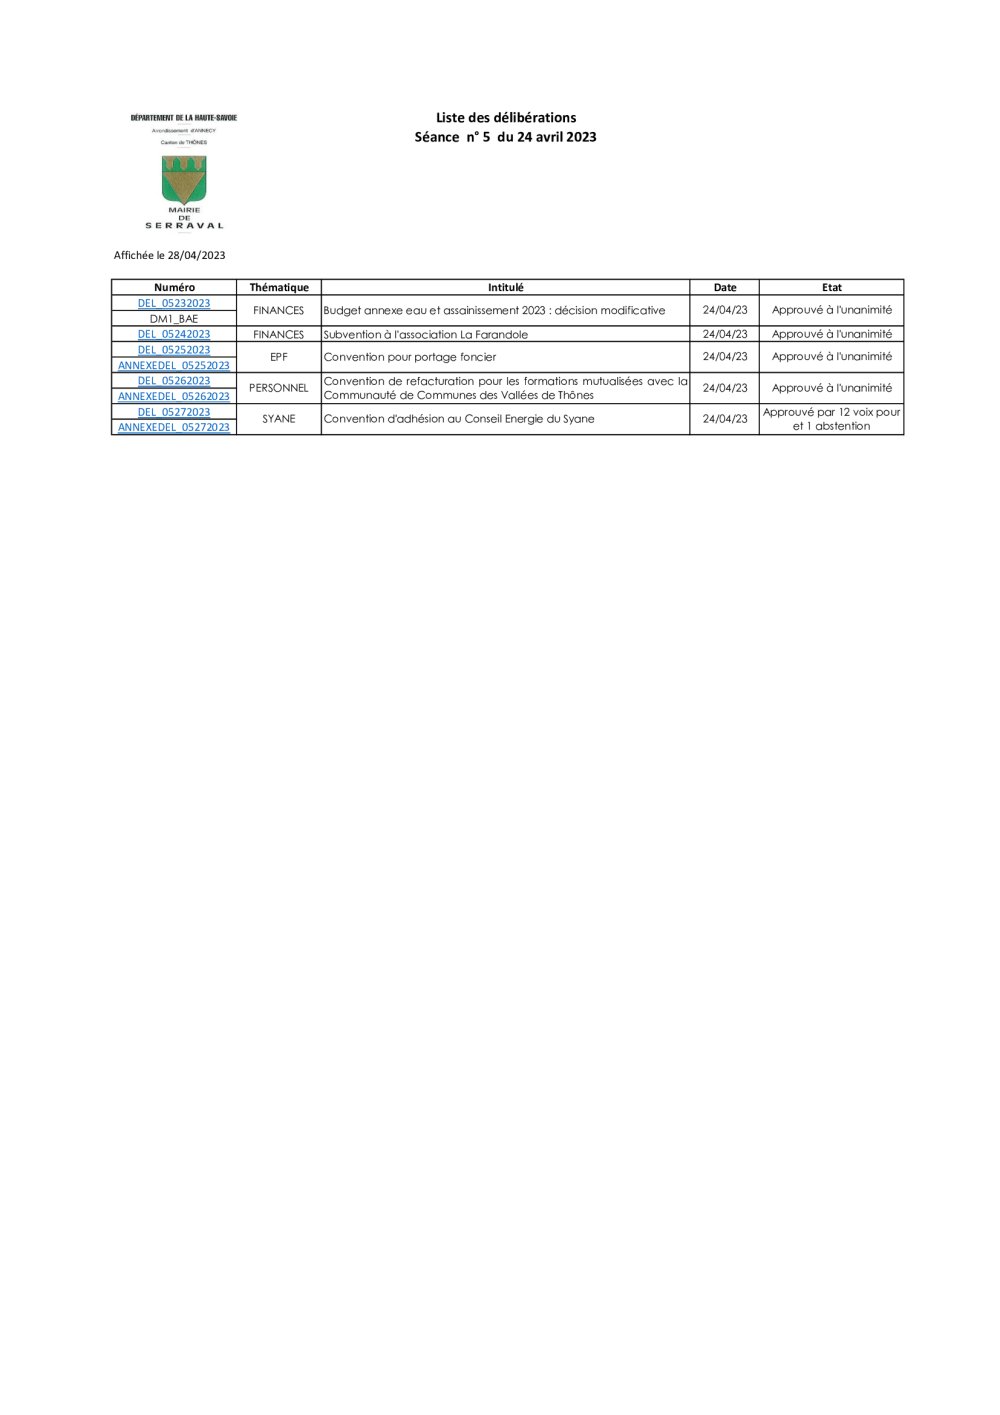 Liste des délibérations Conseil Municipal du 24 avril 2023